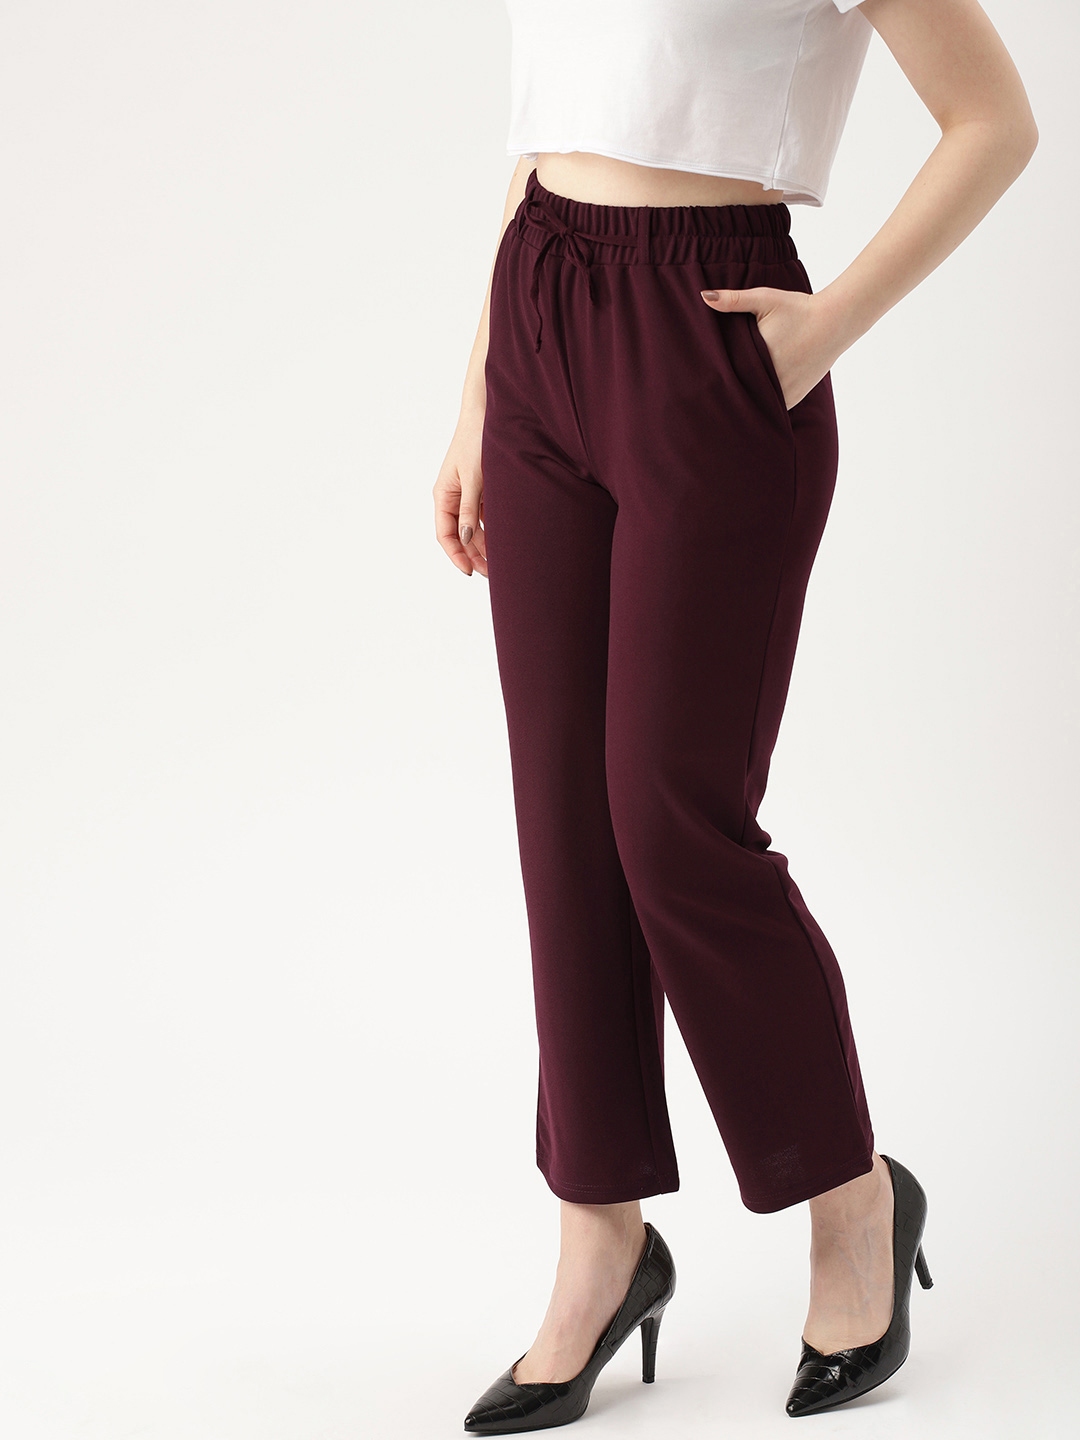 Buy Burgundy Trousers  Pants for Women by Zastraa Online  Ajiocom